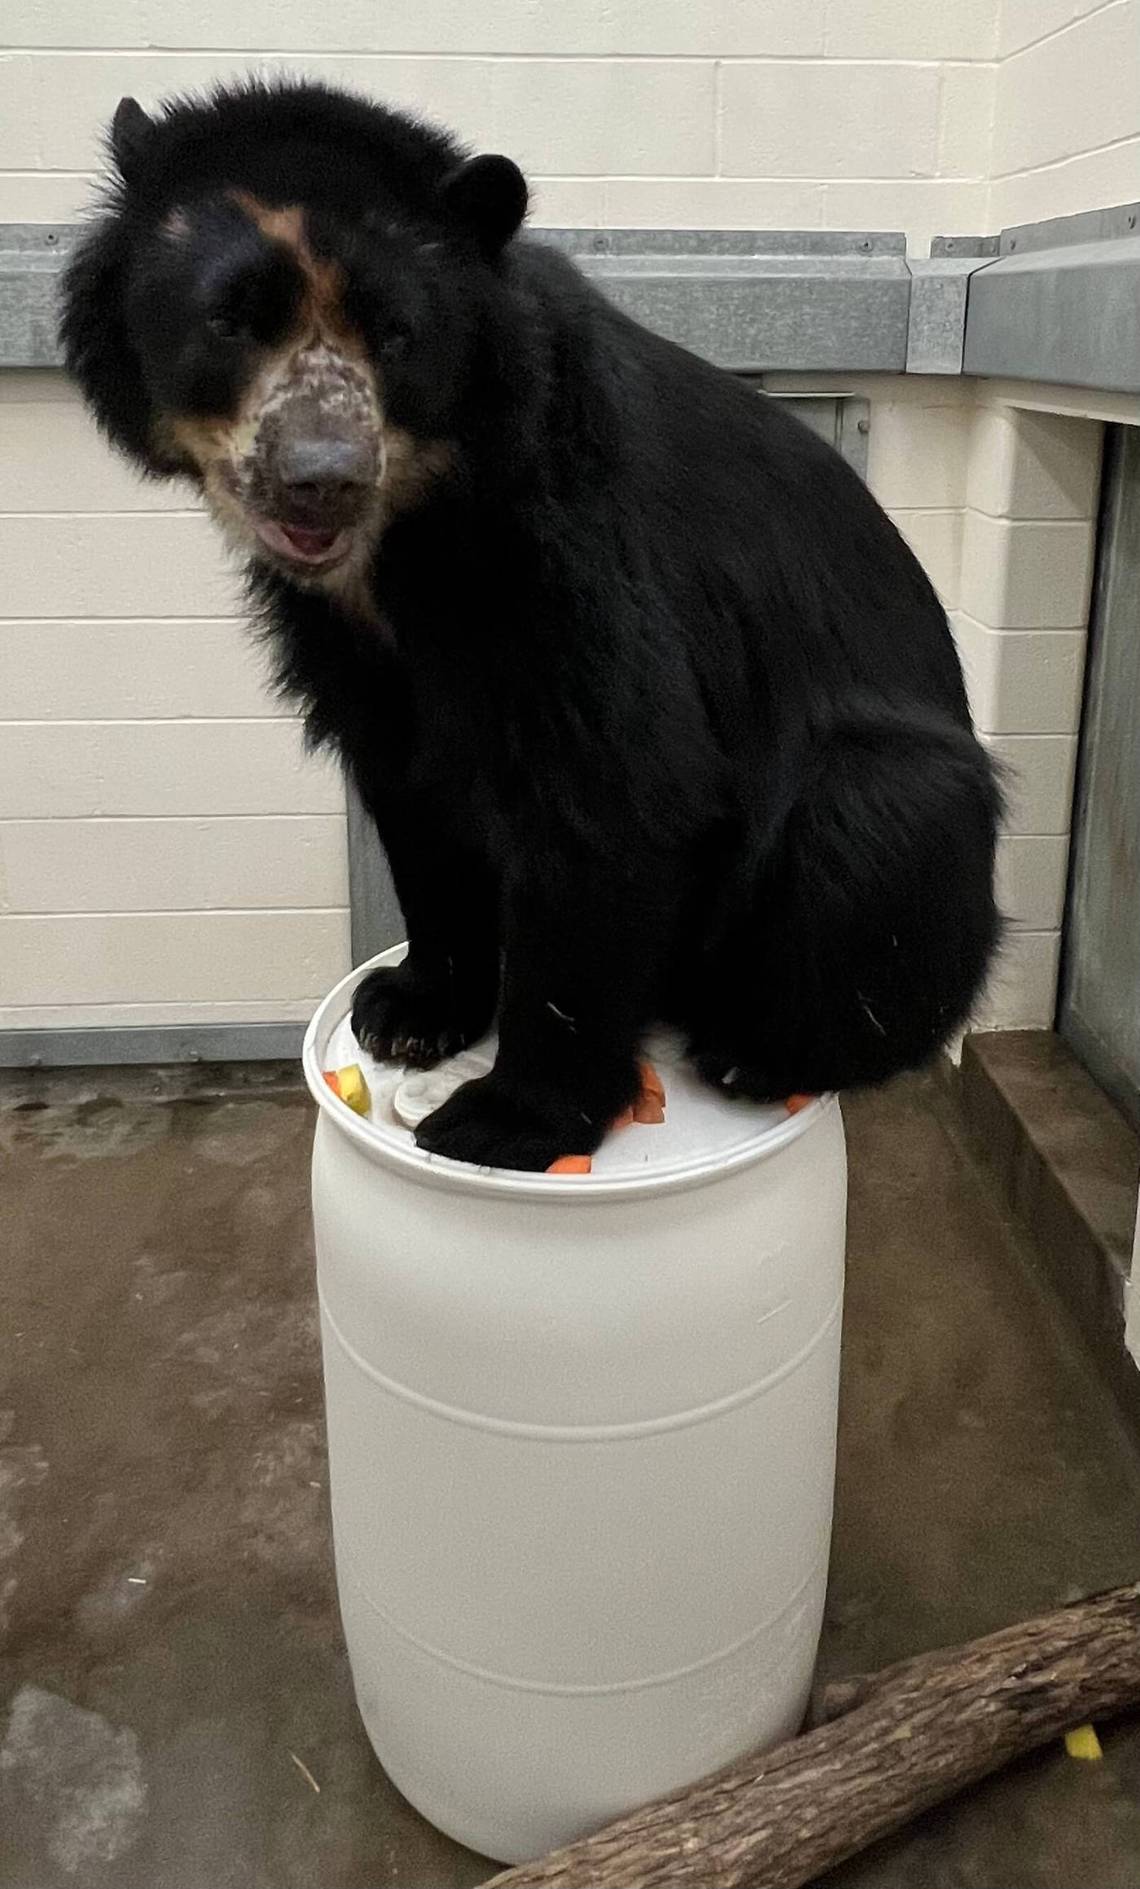 Foto: l'orso Ben (dun orso di colore molto scuro) seduto su un bidone di plastica bianco.